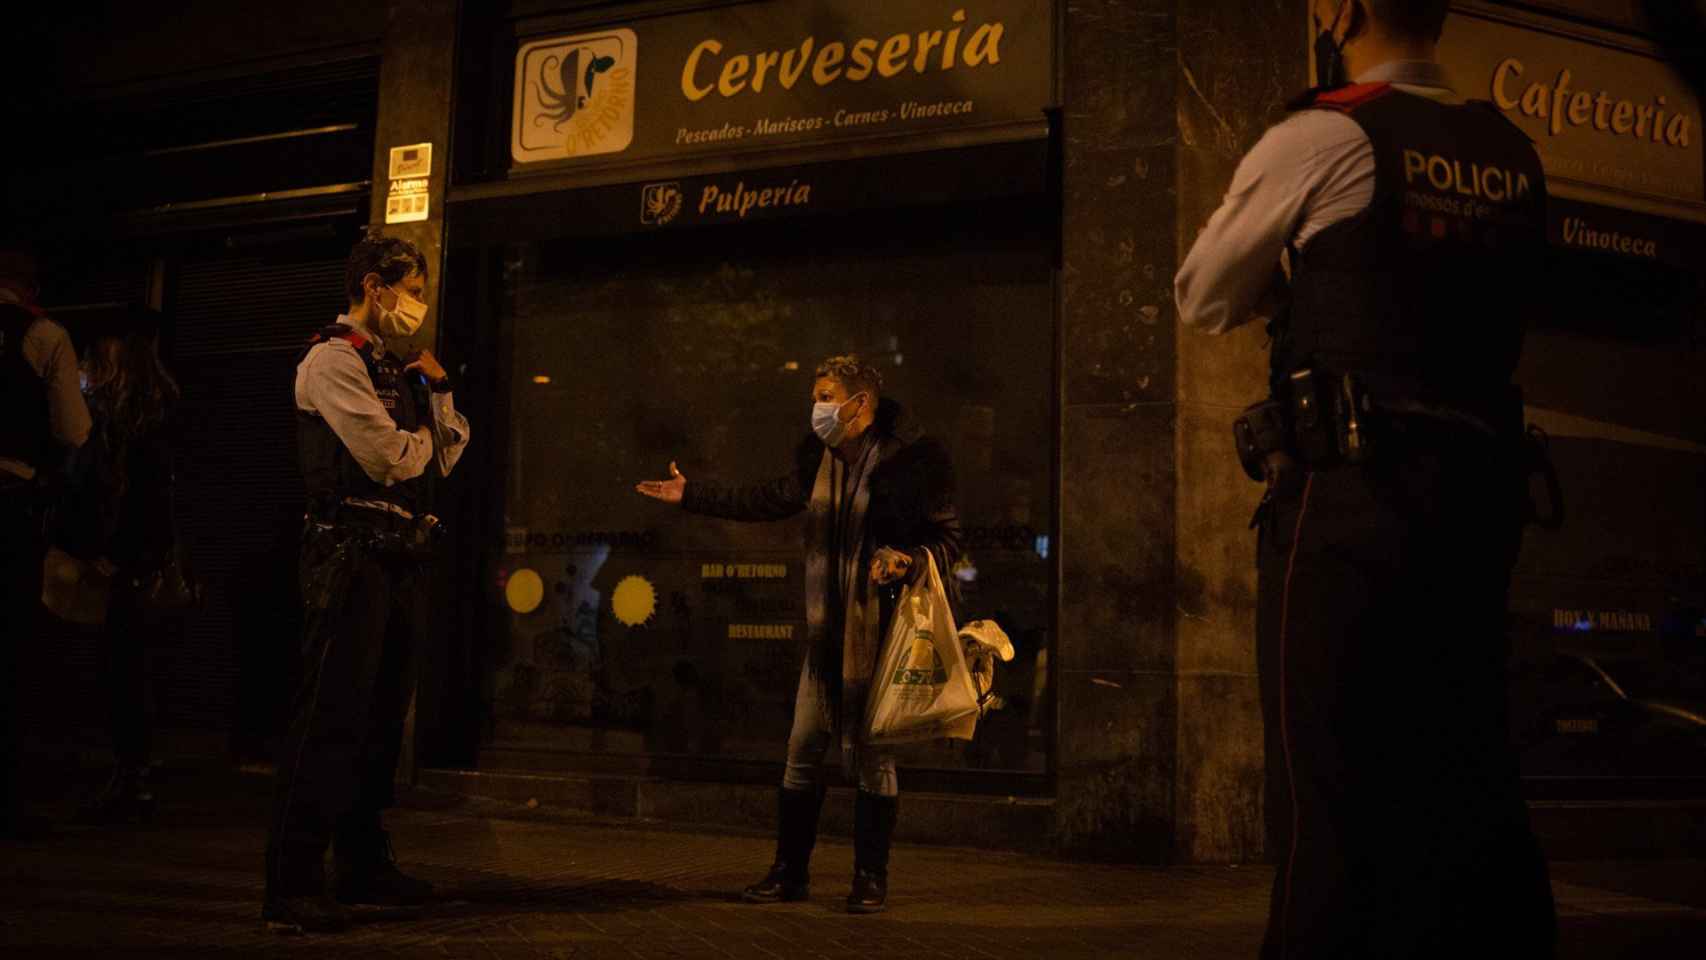 Varios mossos d'Esquadra paran a una persona durante un control durante el toque de queda